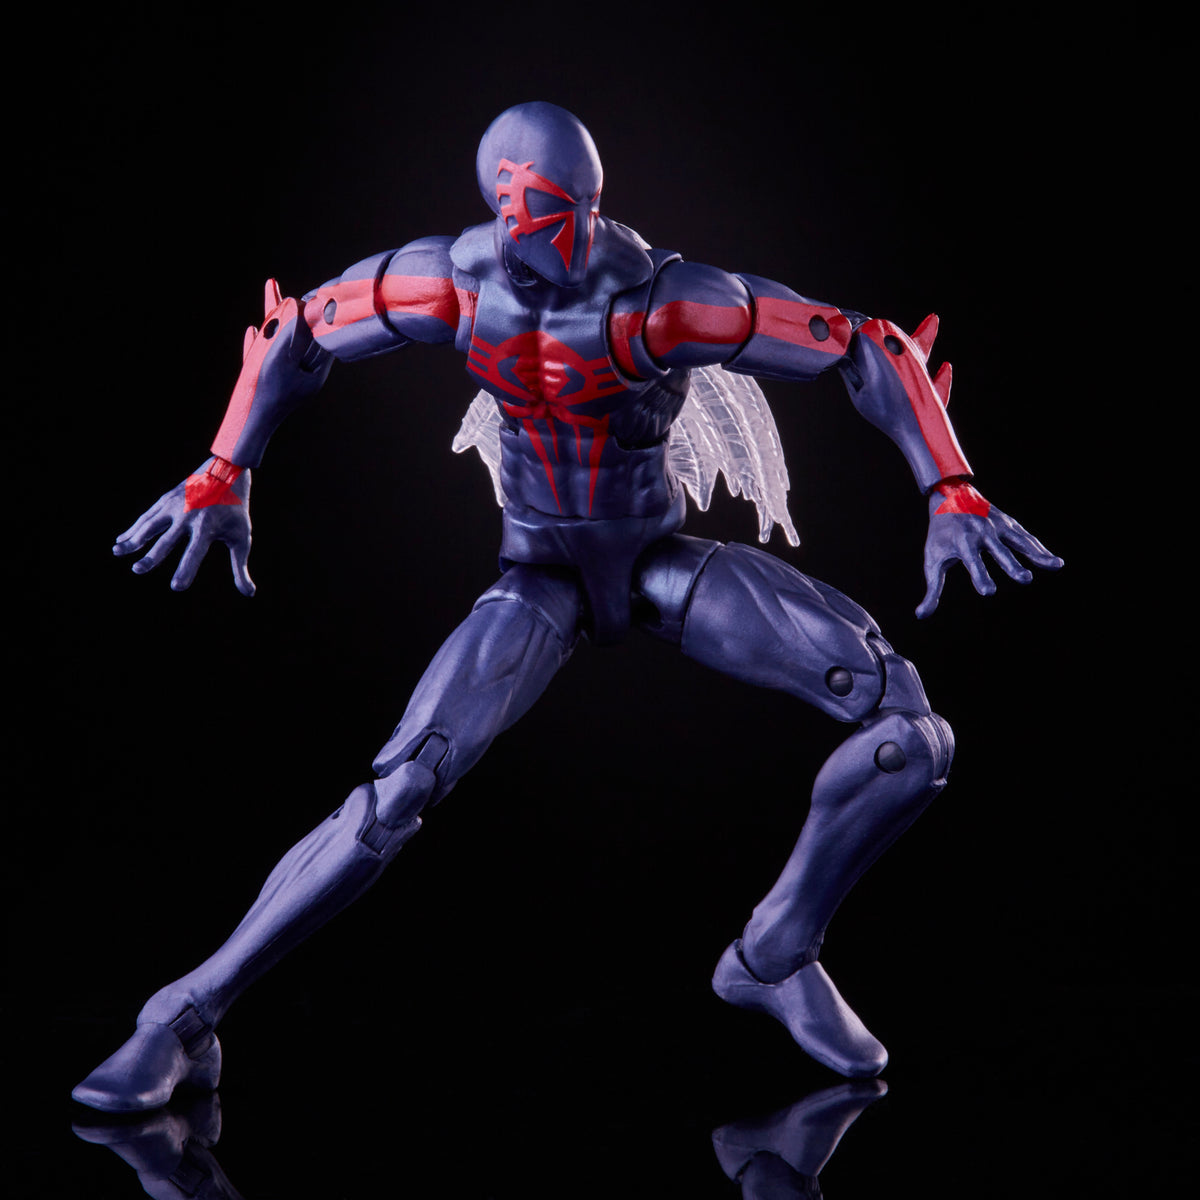 Marvel Spider-Man 6 Legends Series Multiverse Spider-Men: Spider-Man 2099